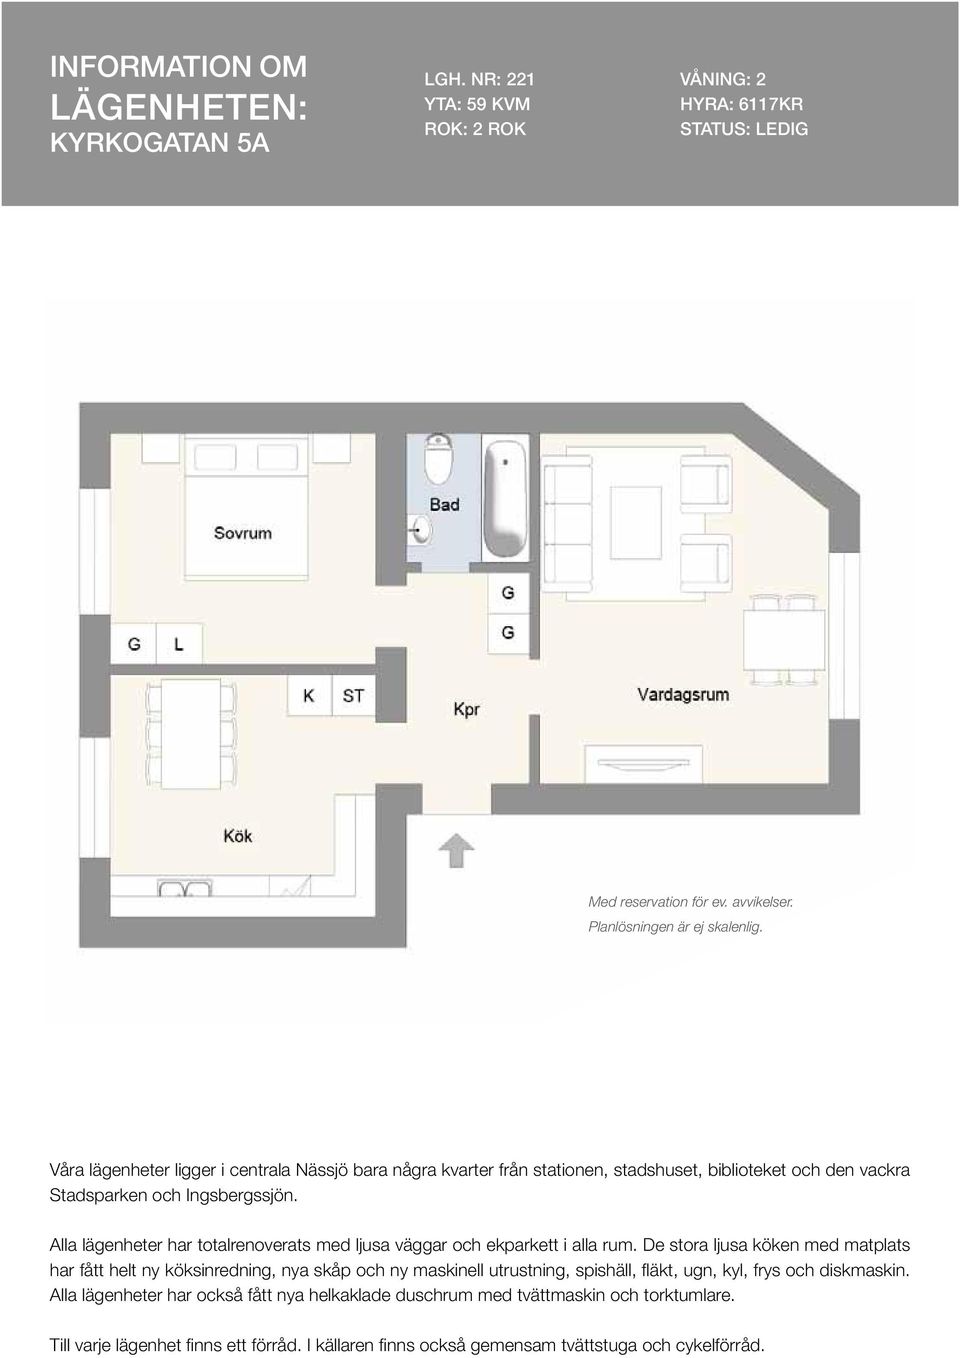 Alla lägenheter har totalrenoverats med ljusa väggar och ekparkett i alla rum.